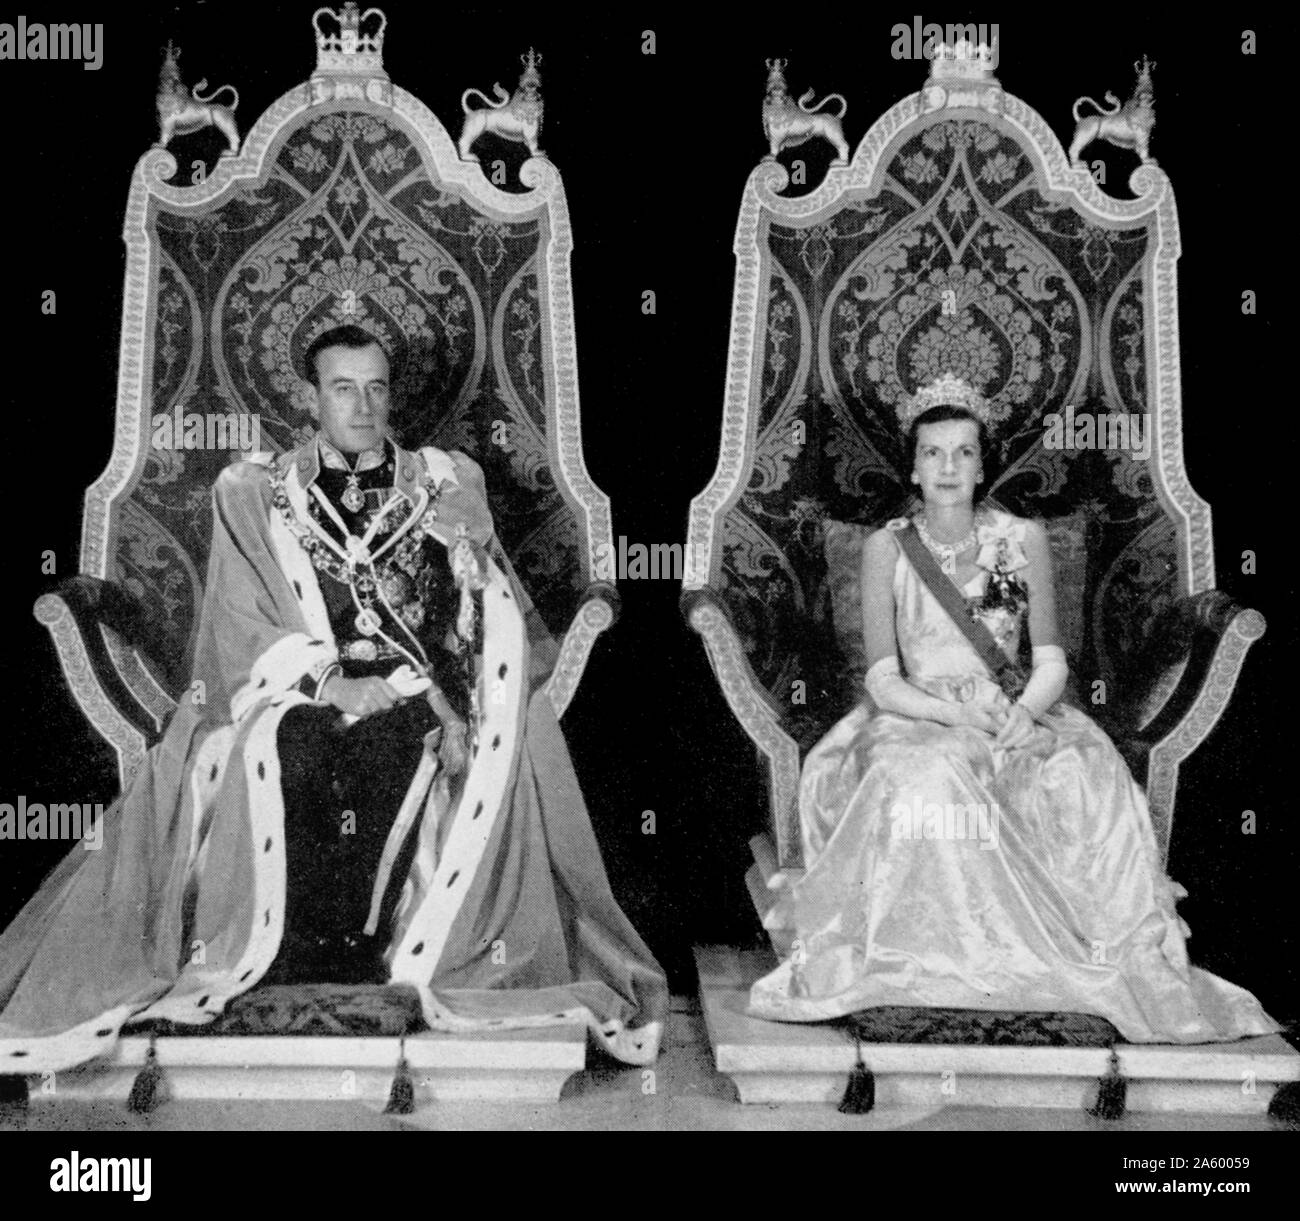 Der Graf und Gräfin Mountbatten von Birma. Der Titel entstand für Rear Admiral Louis Mountbatten, 1. Viscount Mountbatten von Birma, die letzten Vizekönig von Indien. Stockfoto